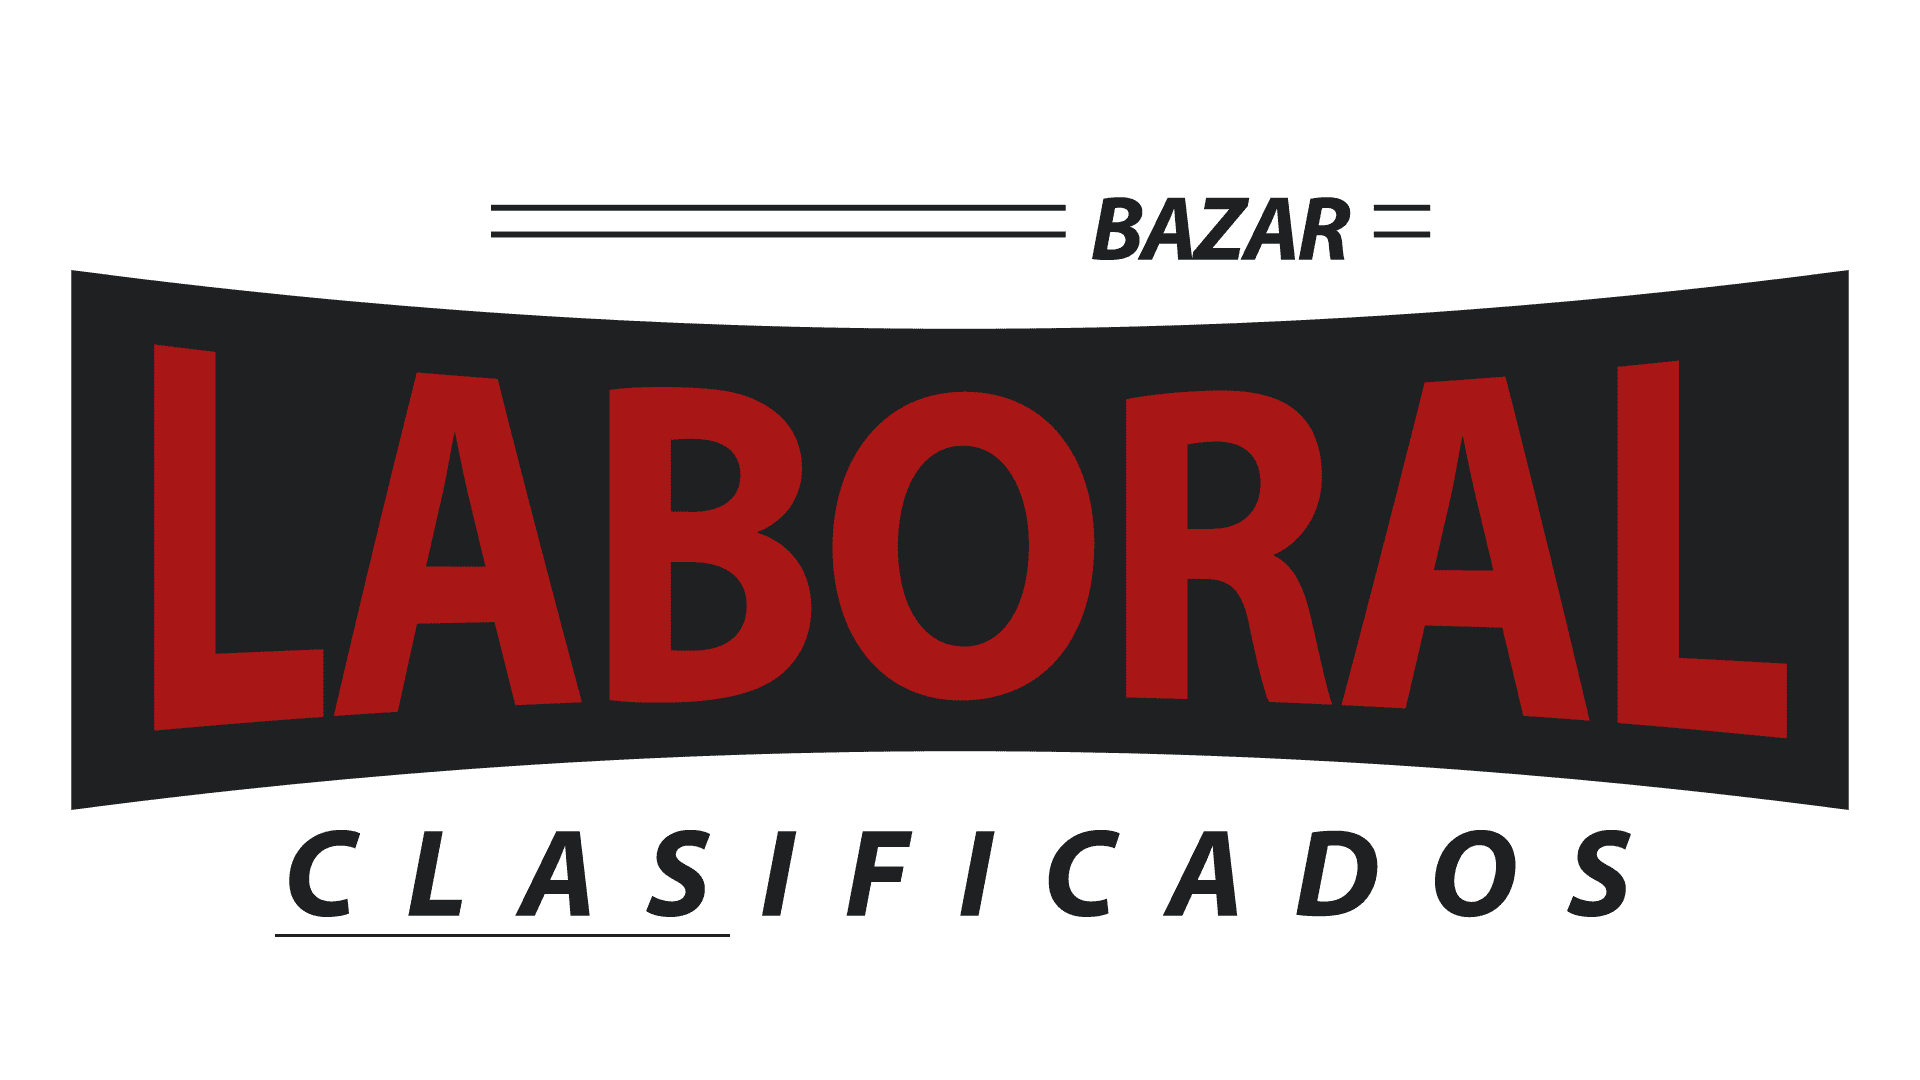 BazarLaboral.com